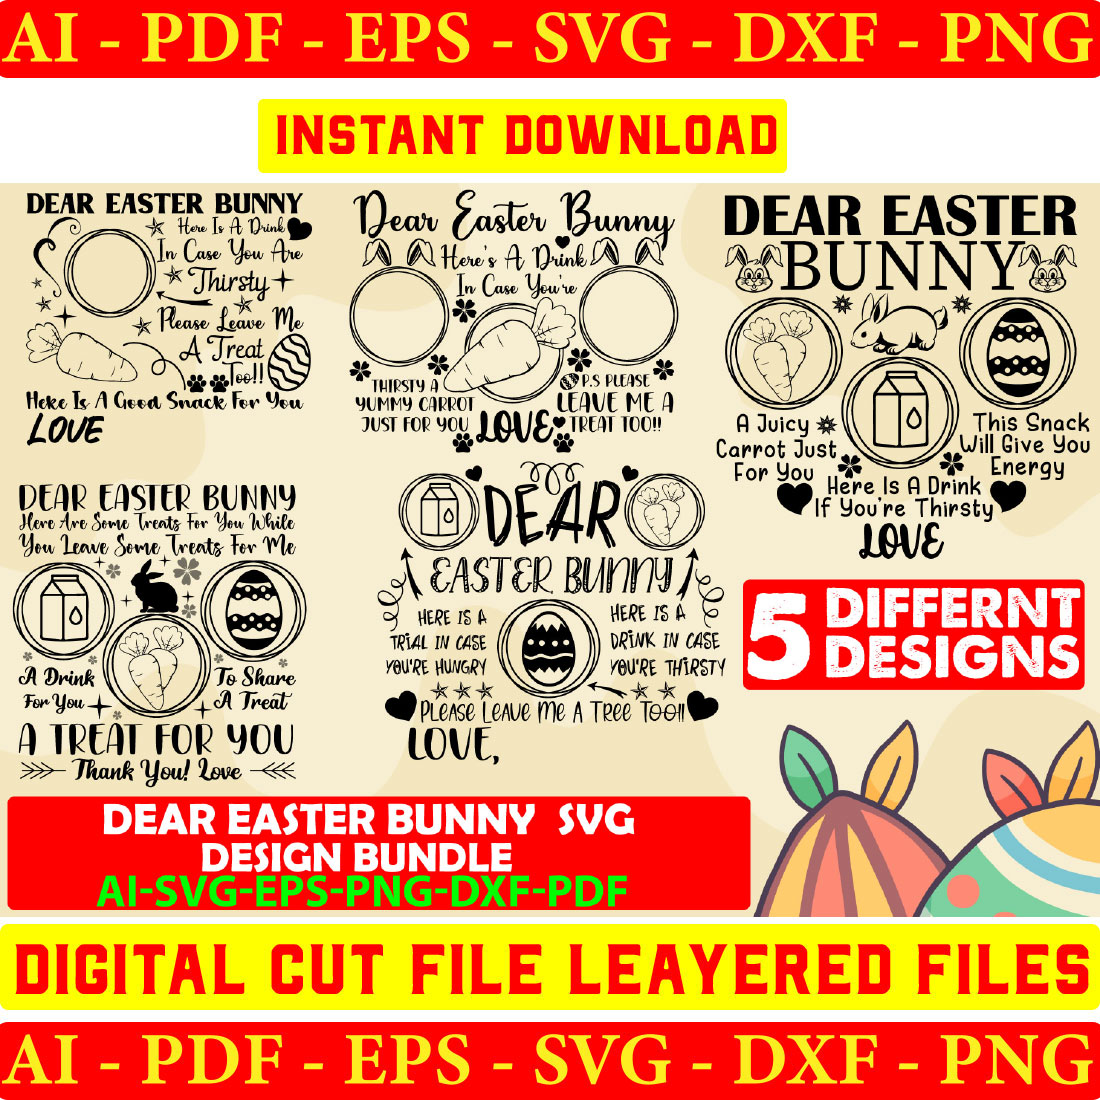 Dear Easter Bunny Svg Design Bundle Vol-07 cover image.